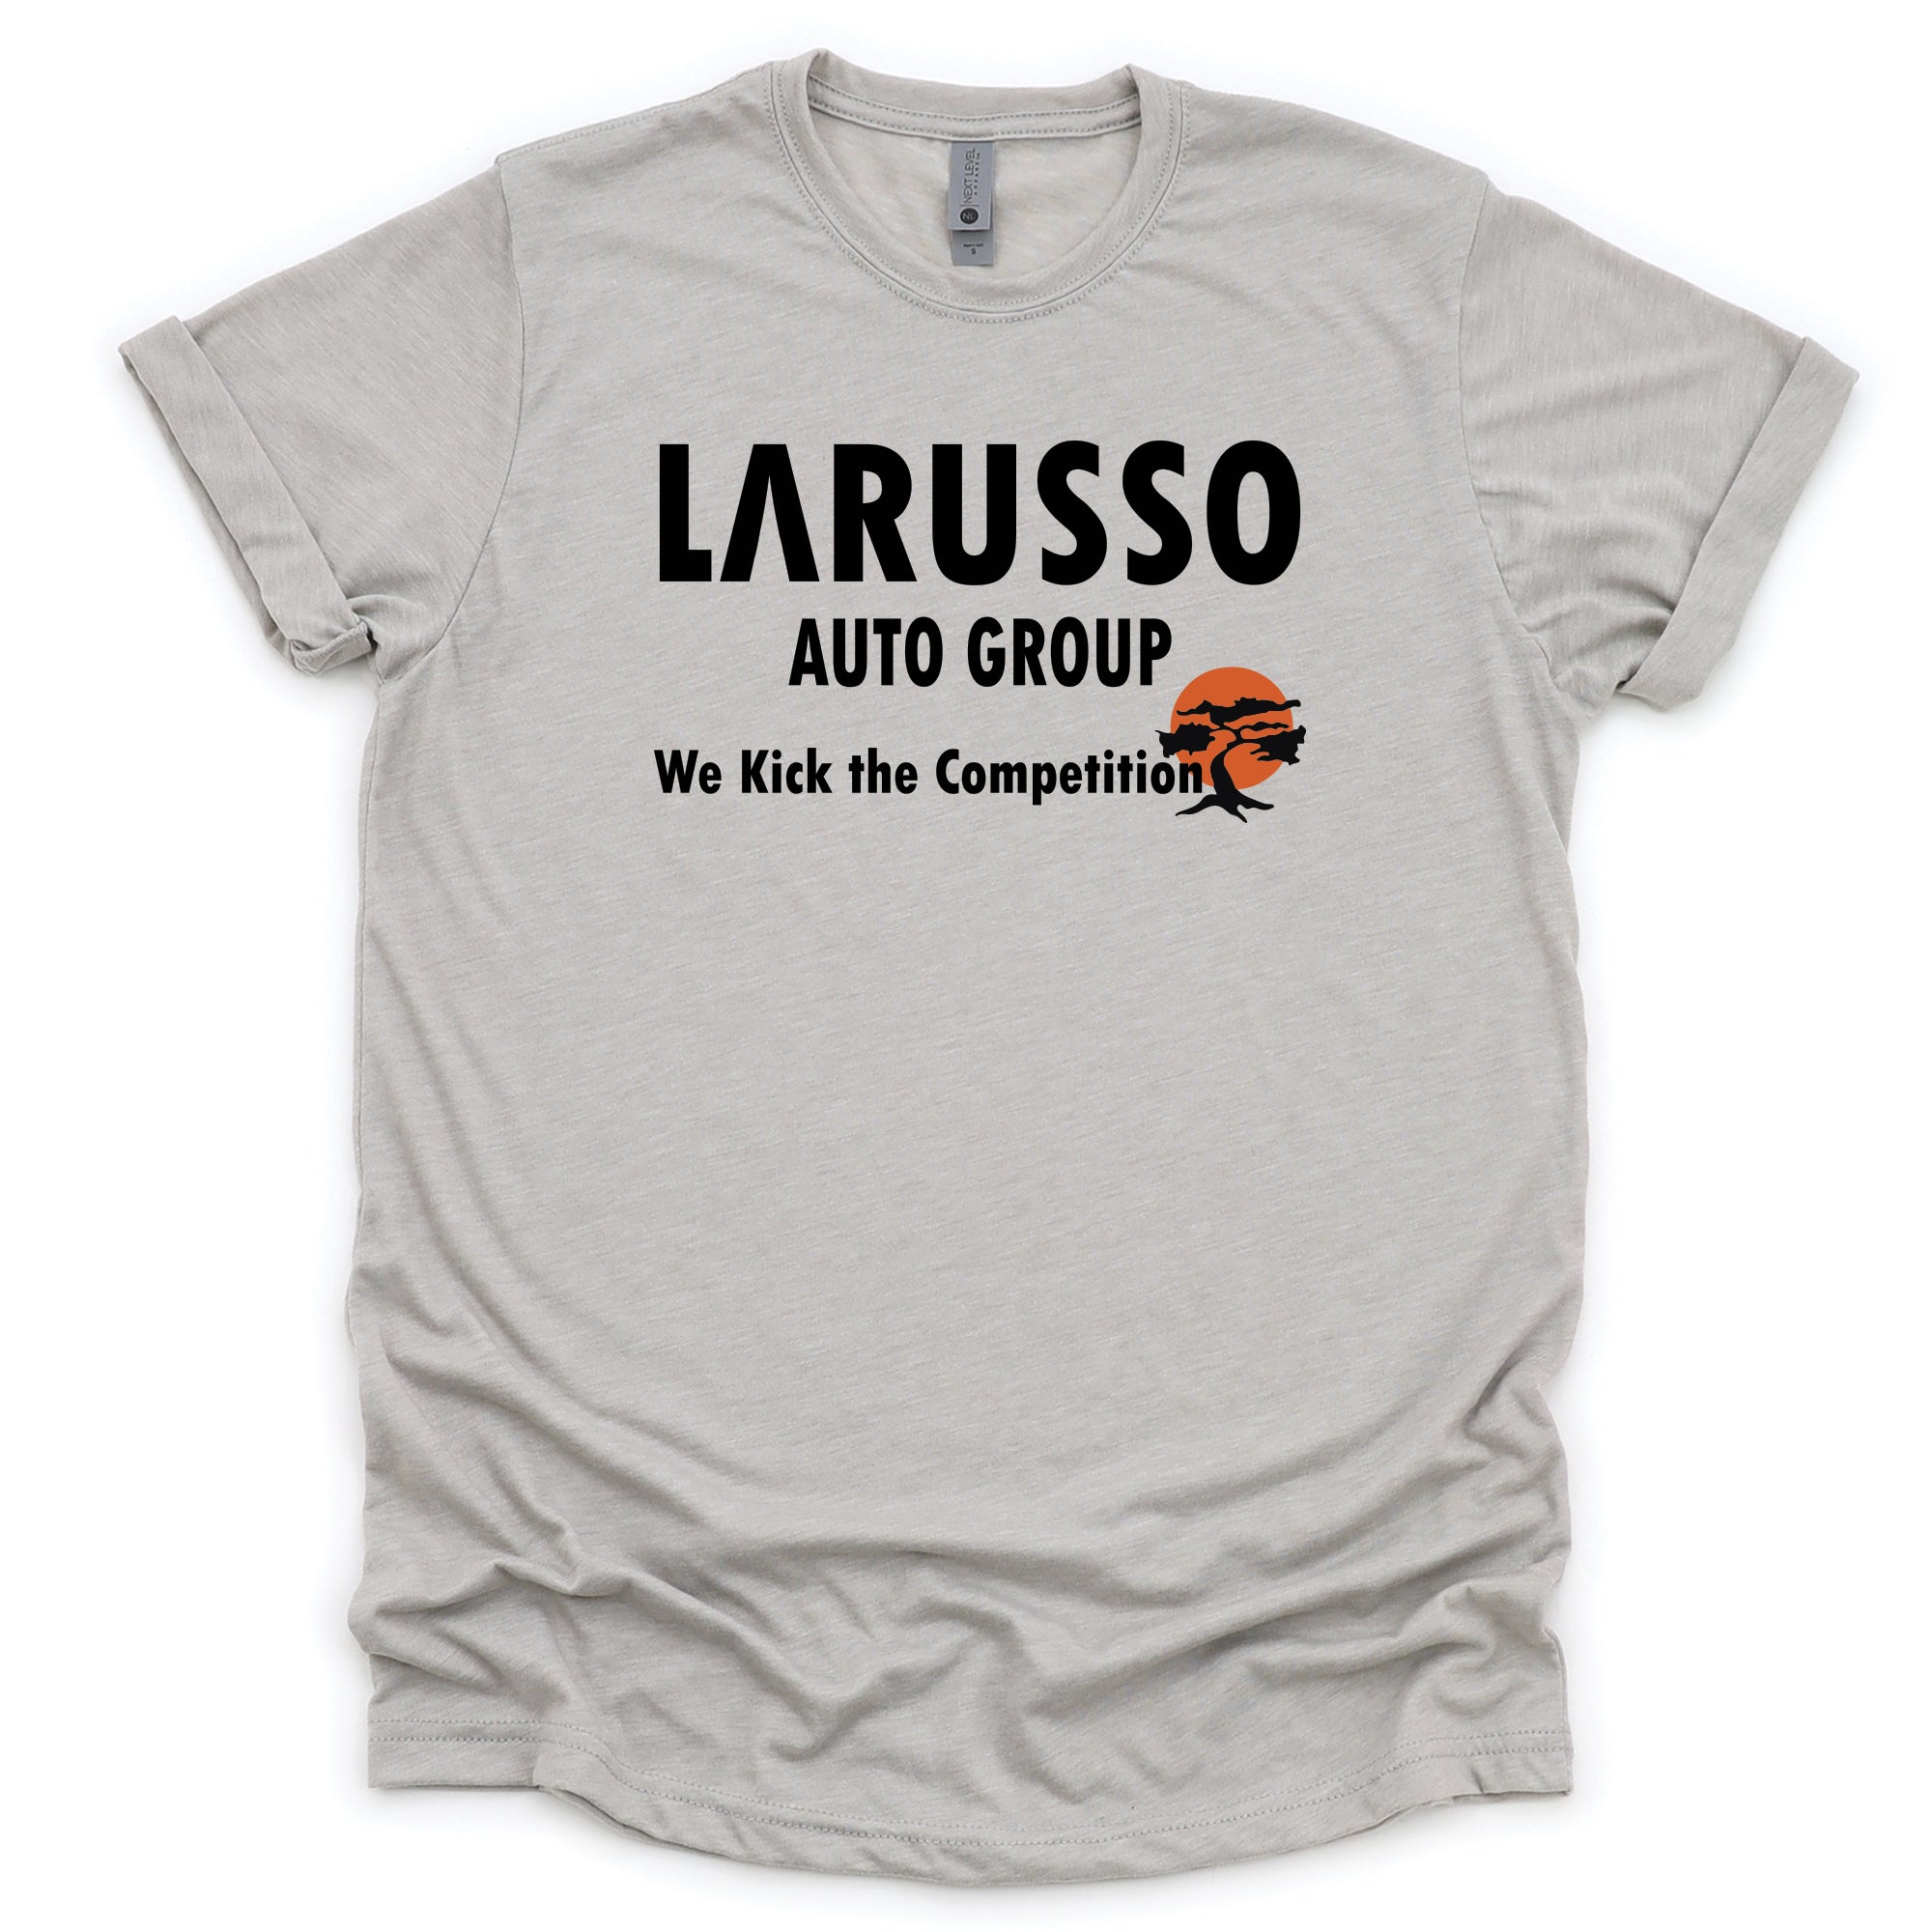 Larusso Auto Group